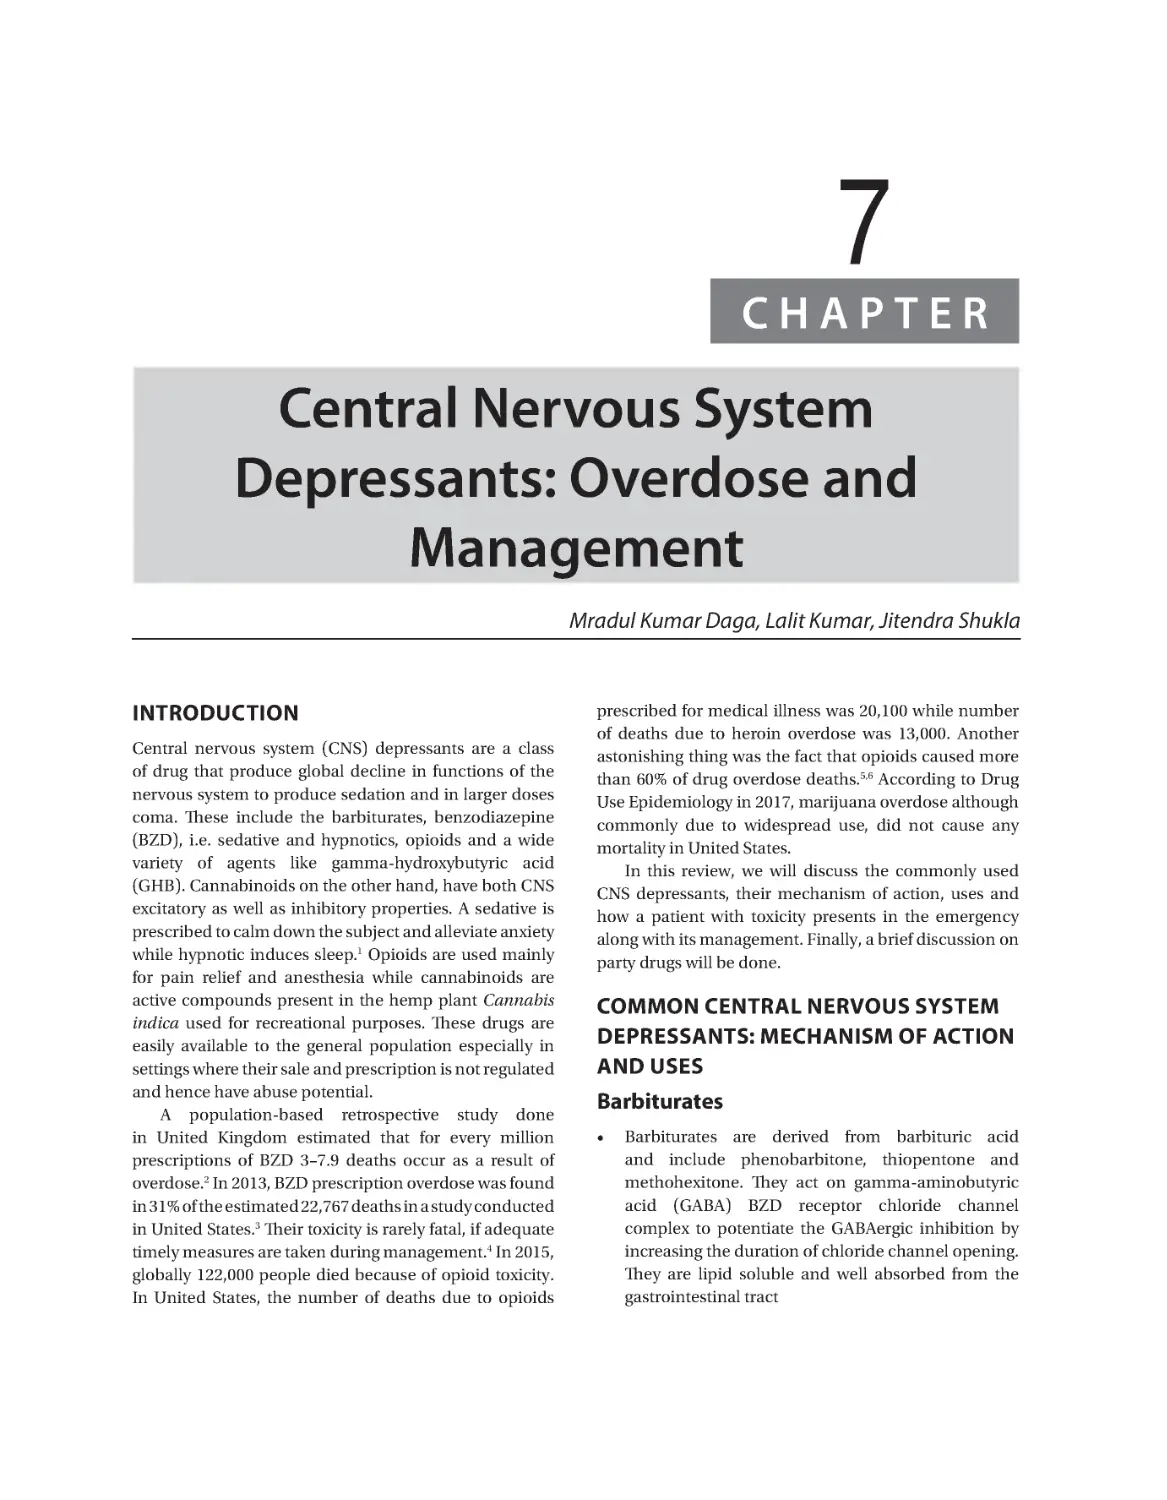 Chapter 7: Central Nervous System Depressants: Overdose and Management